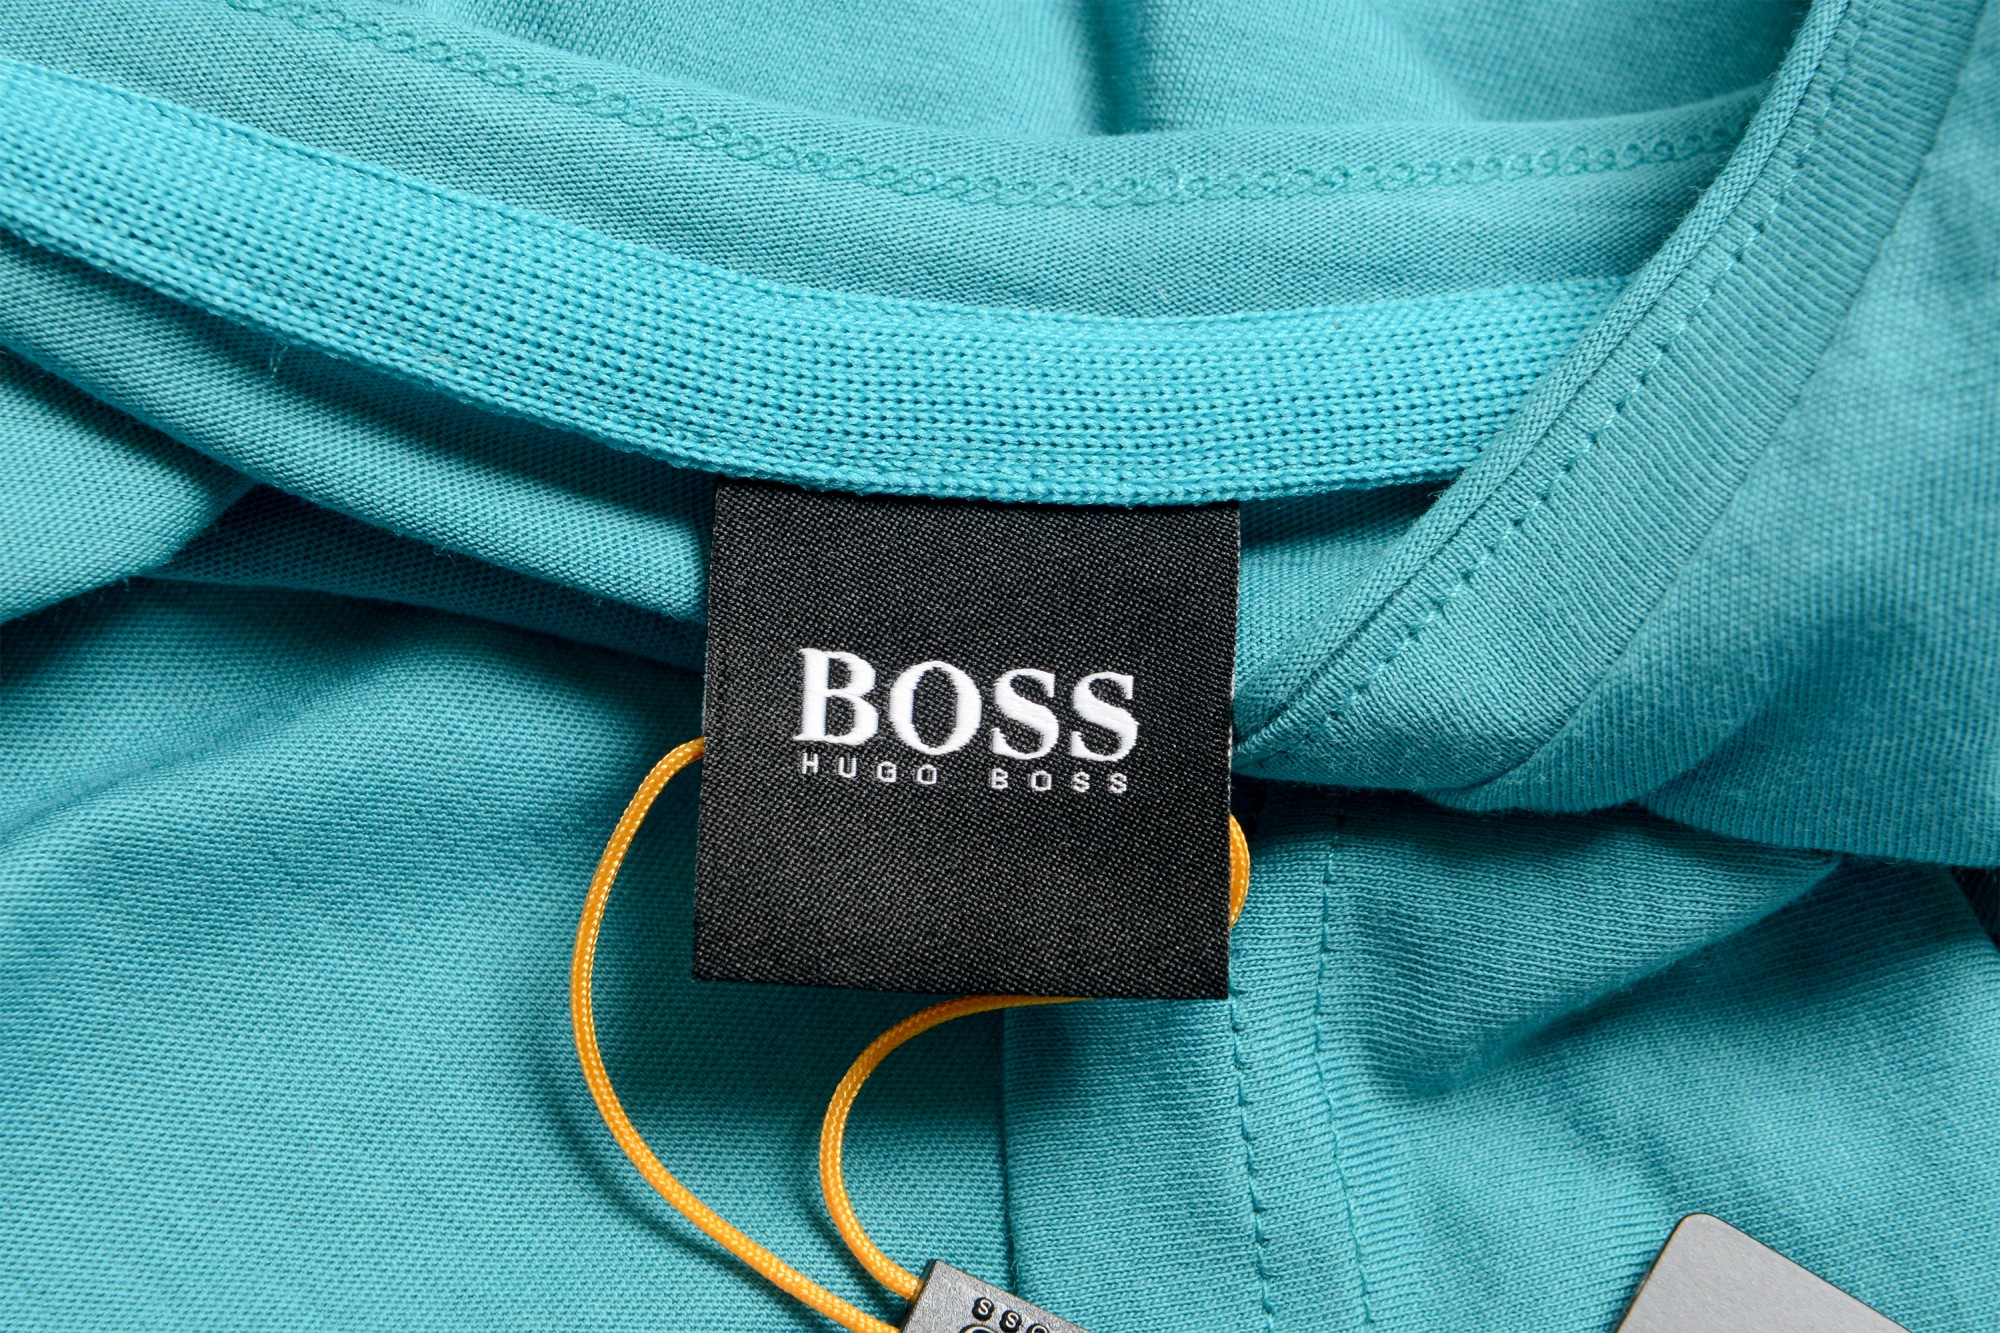 Hugo Boss Men's "Trust" T-Shirt